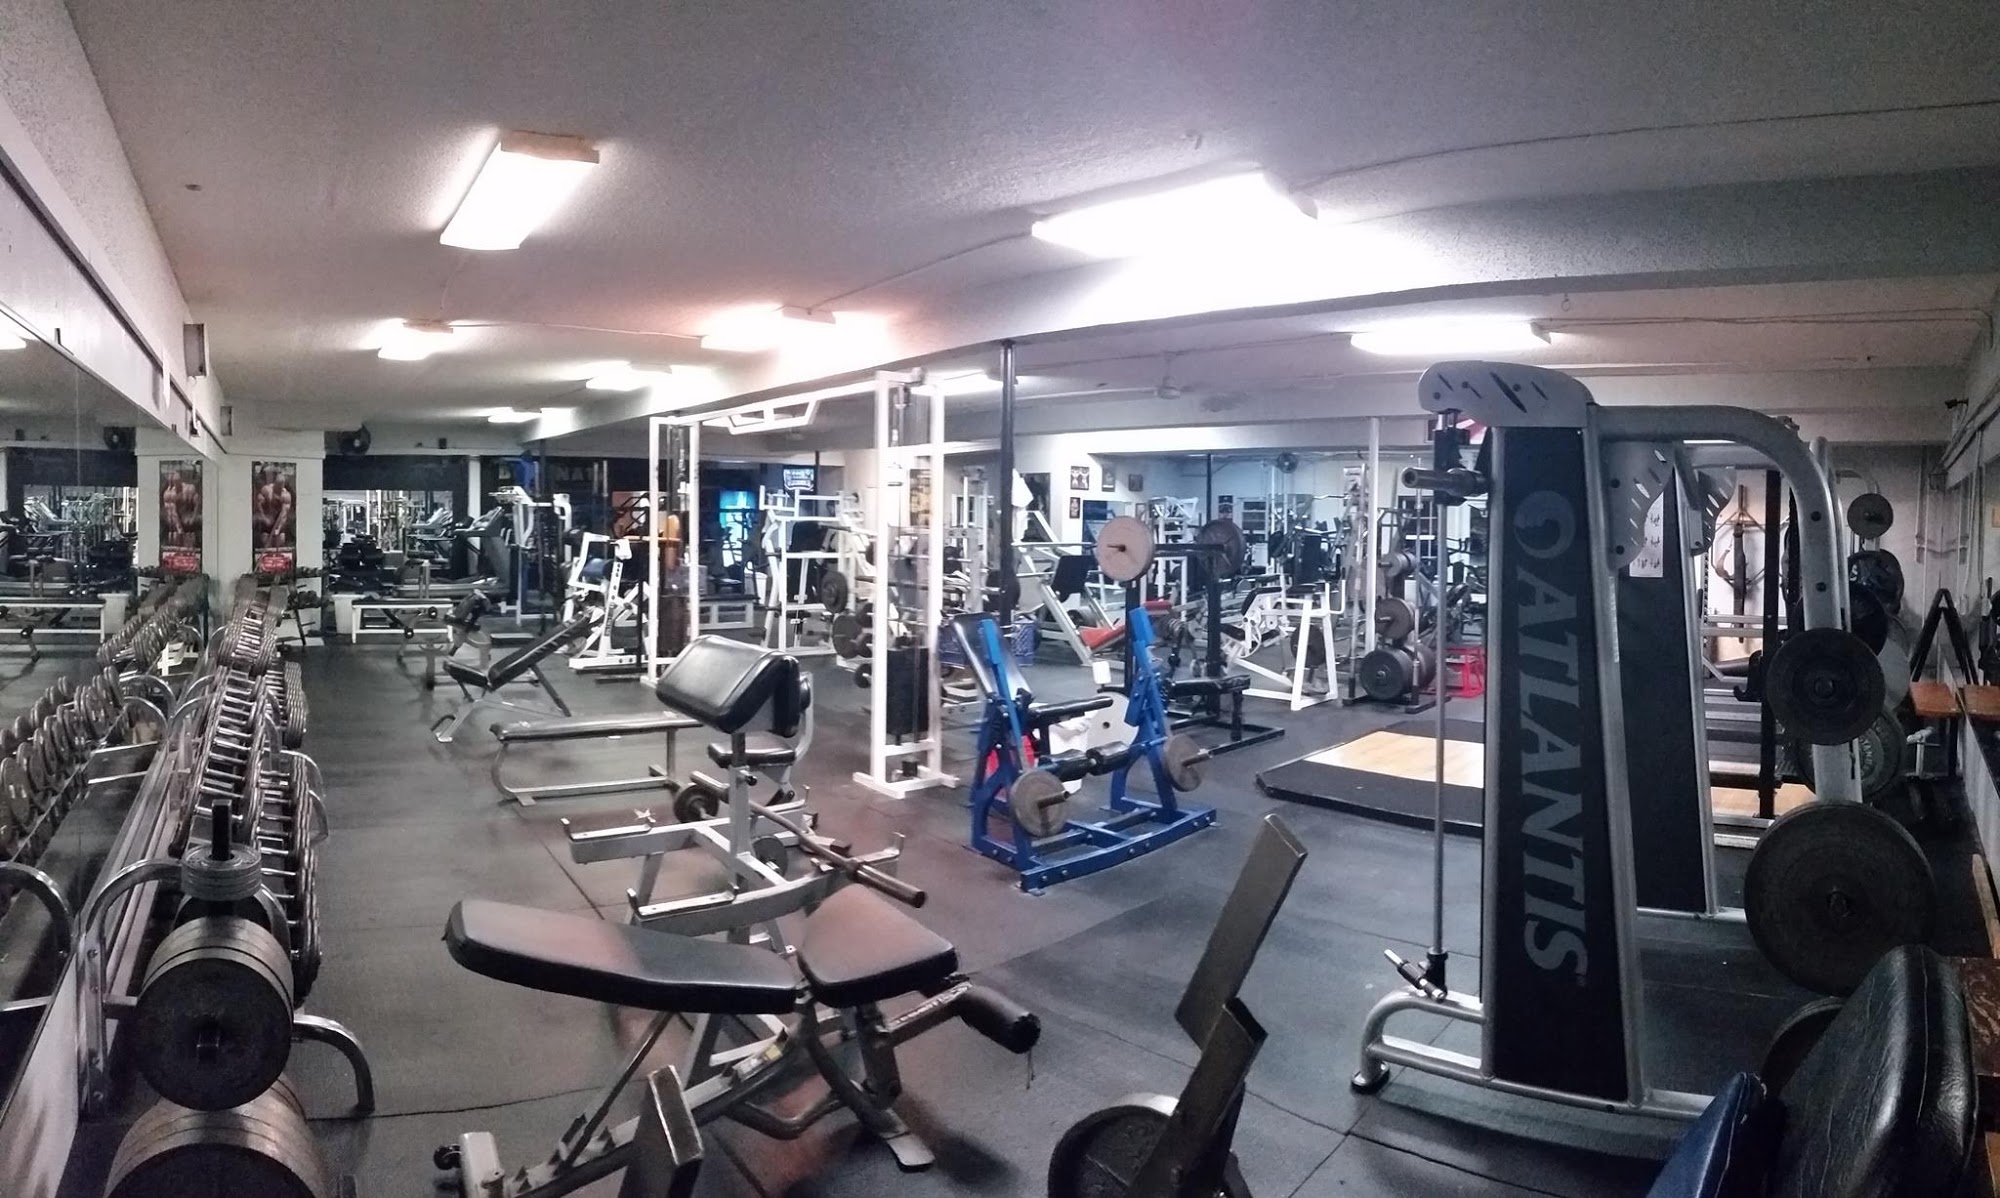 24 hour Fitness Zone gym.